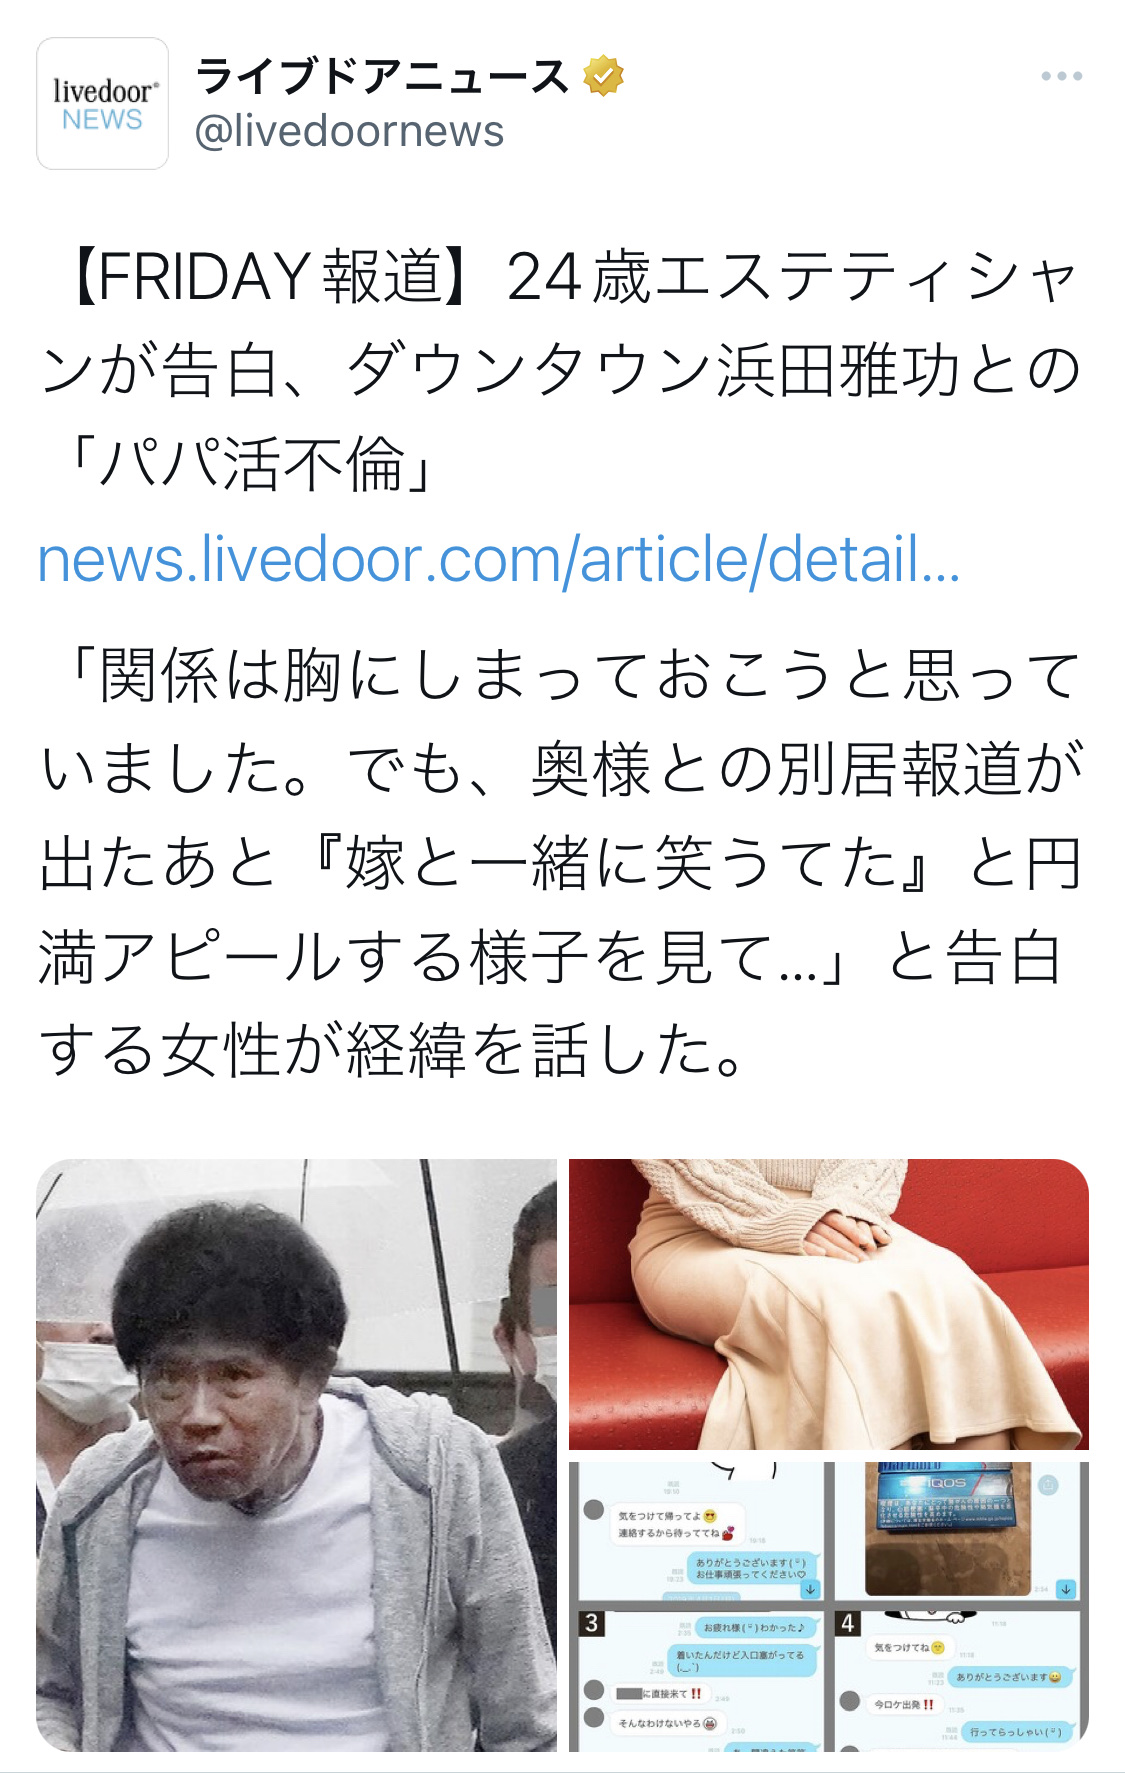 【パパ活】ダウンタウン浜田雅功(59)、LINEで自分の似顔絵スタンプを送っていた